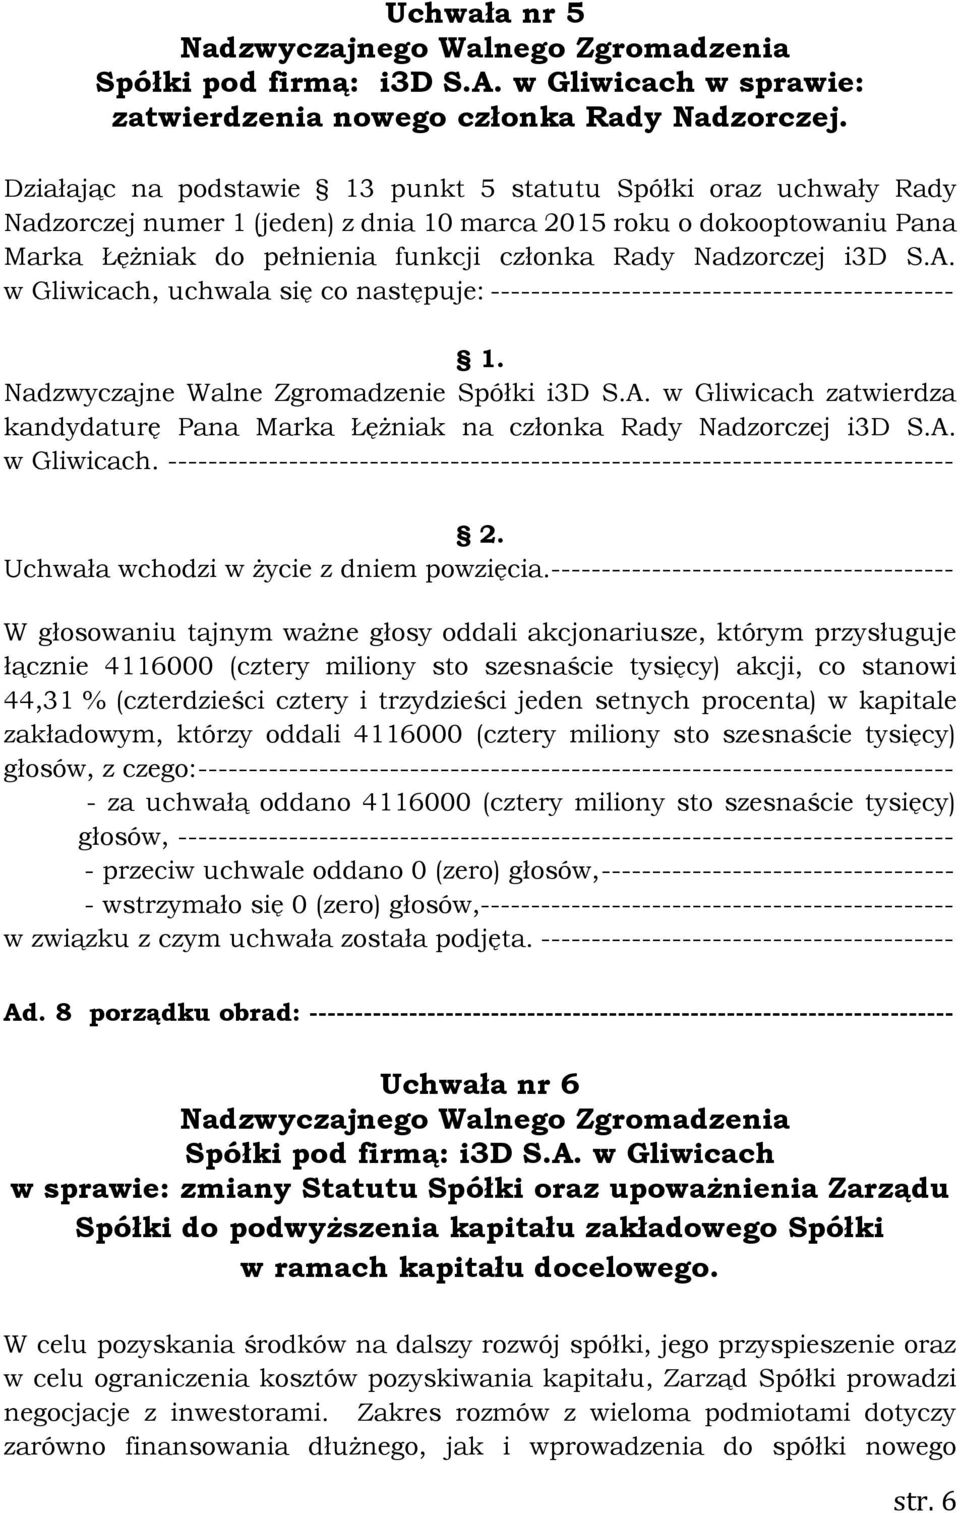 i3d S.A. w Gliwicach, uchwala się co następuje: ---------------------------------------------- Nadzwyczajne Walne Zgromadzenie Spółki i3d S.A. w Gliwicach zatwierdza kandydaturę Pana Marka Łężniak na członka Rady Nadzorczej i3d S.